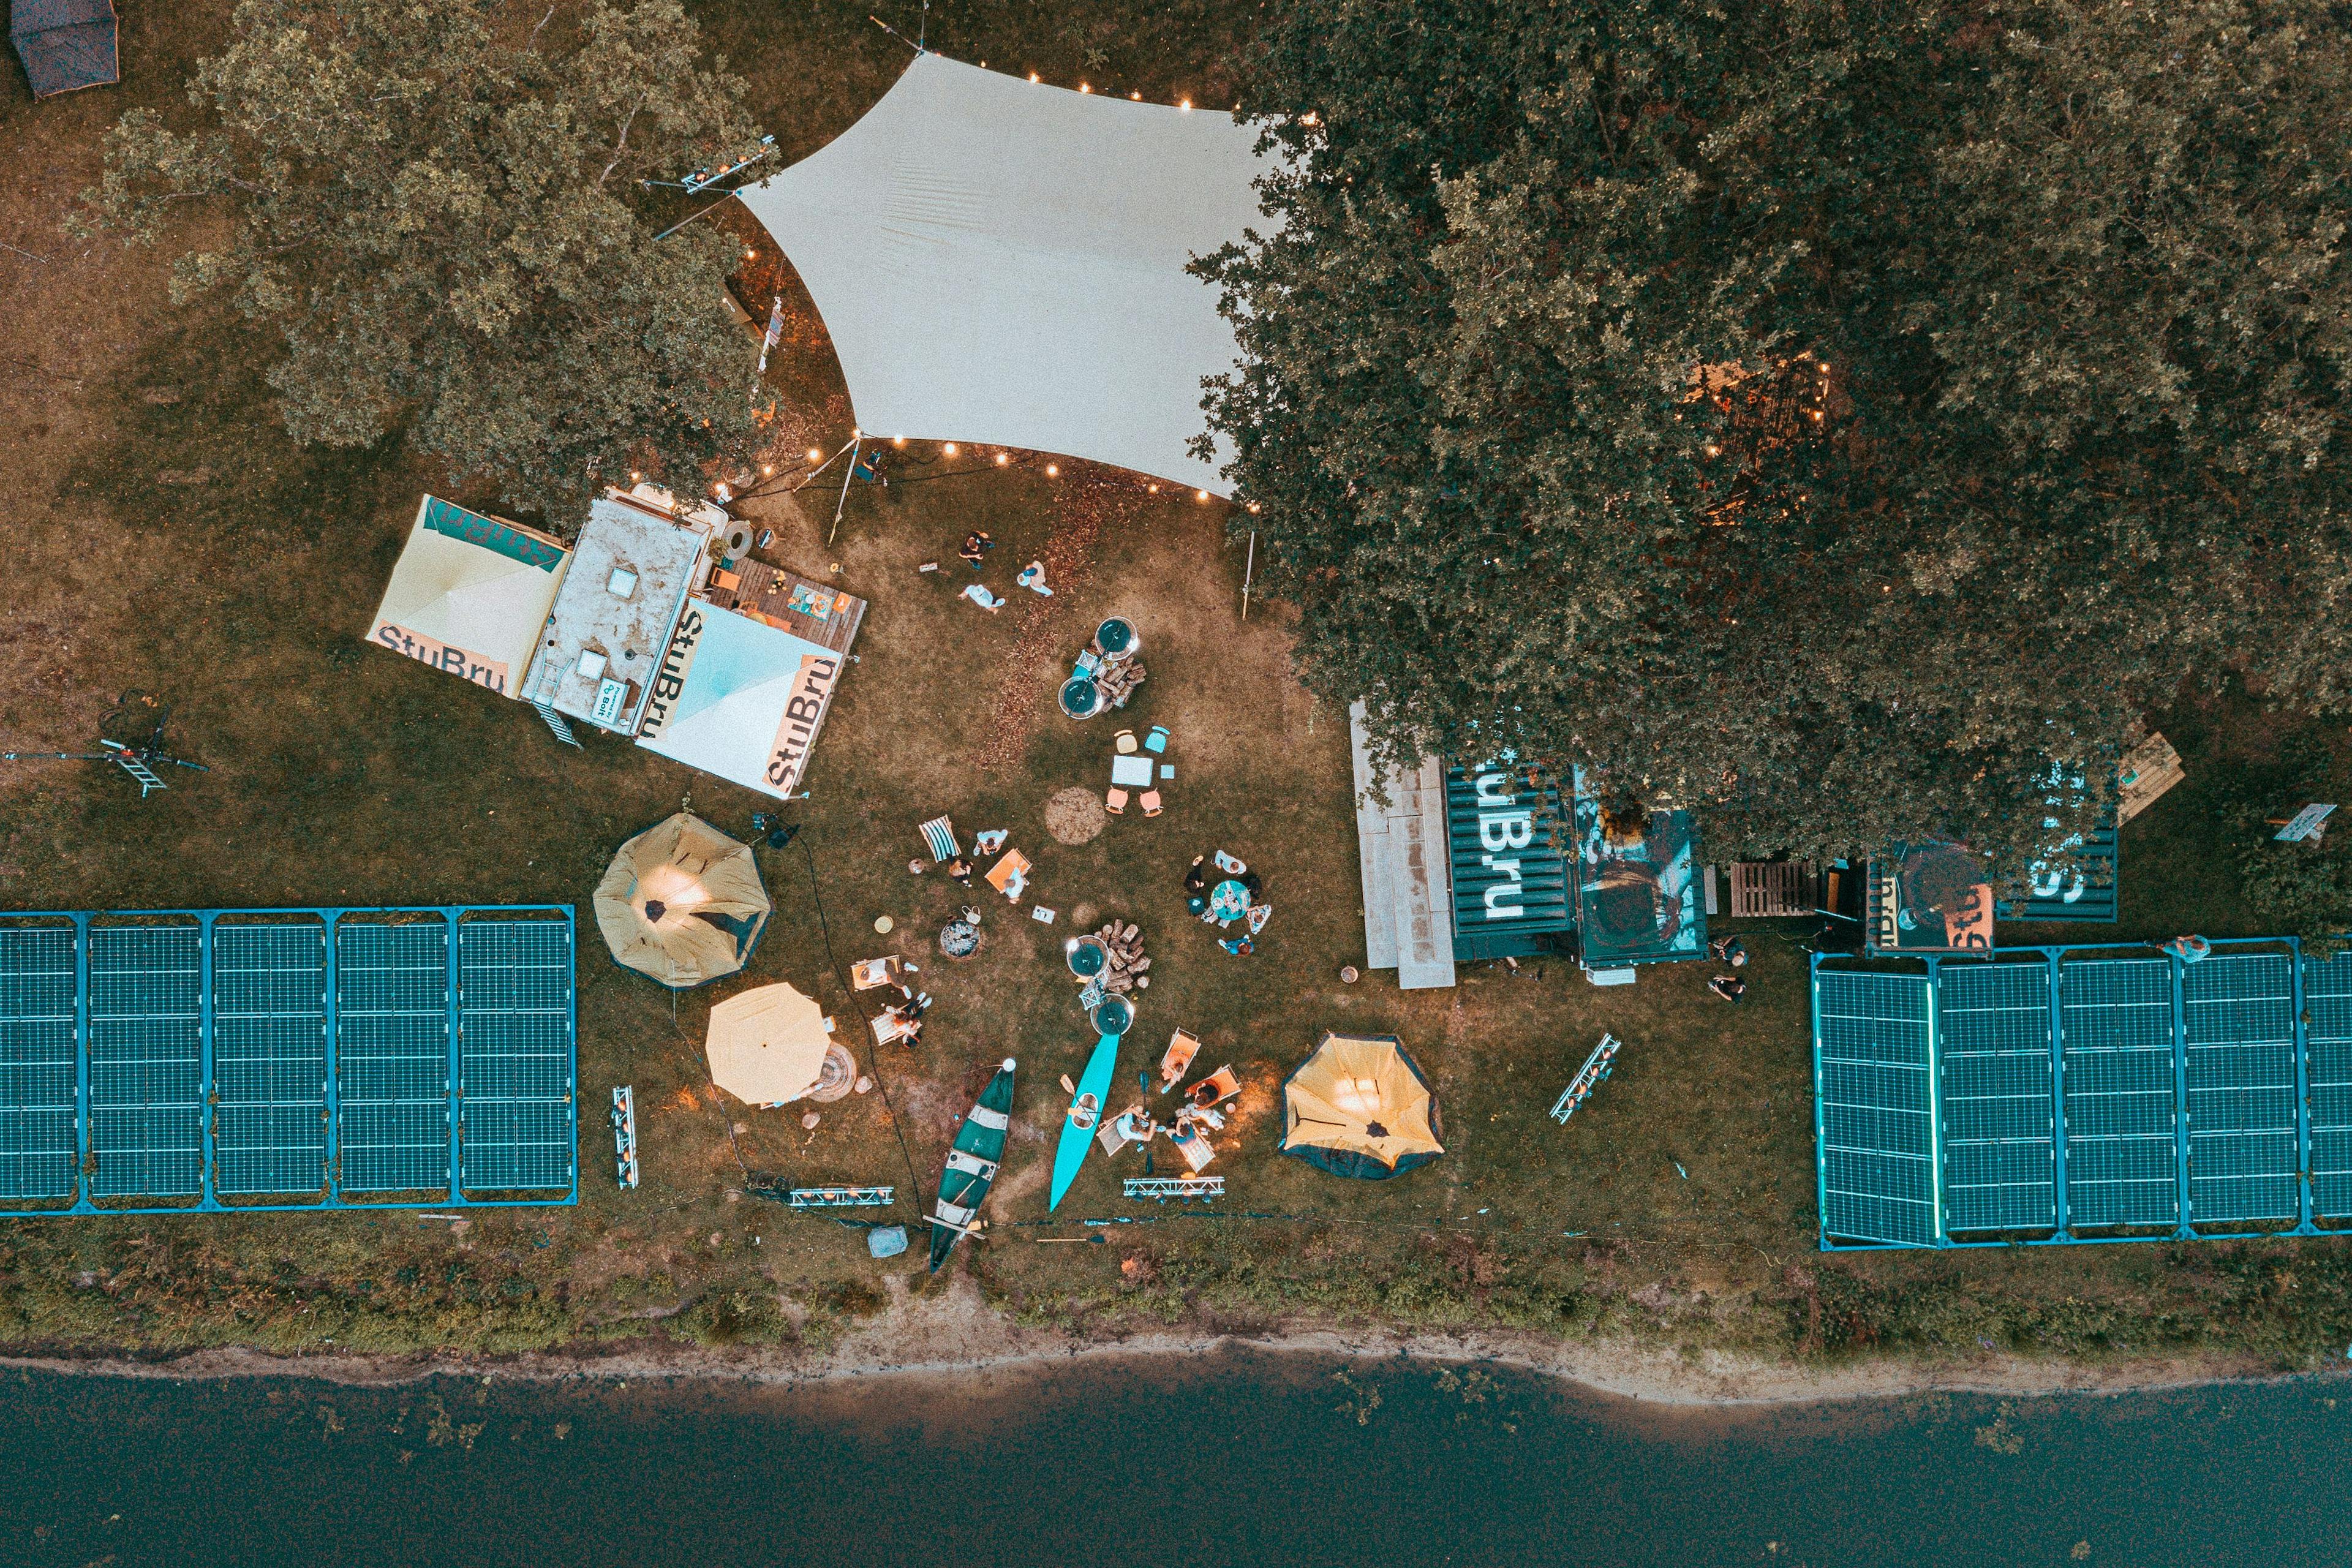 2020-08-14 - Camping Belgica @ Eksaarde - 02. Luchtfoto's - 020.jpg